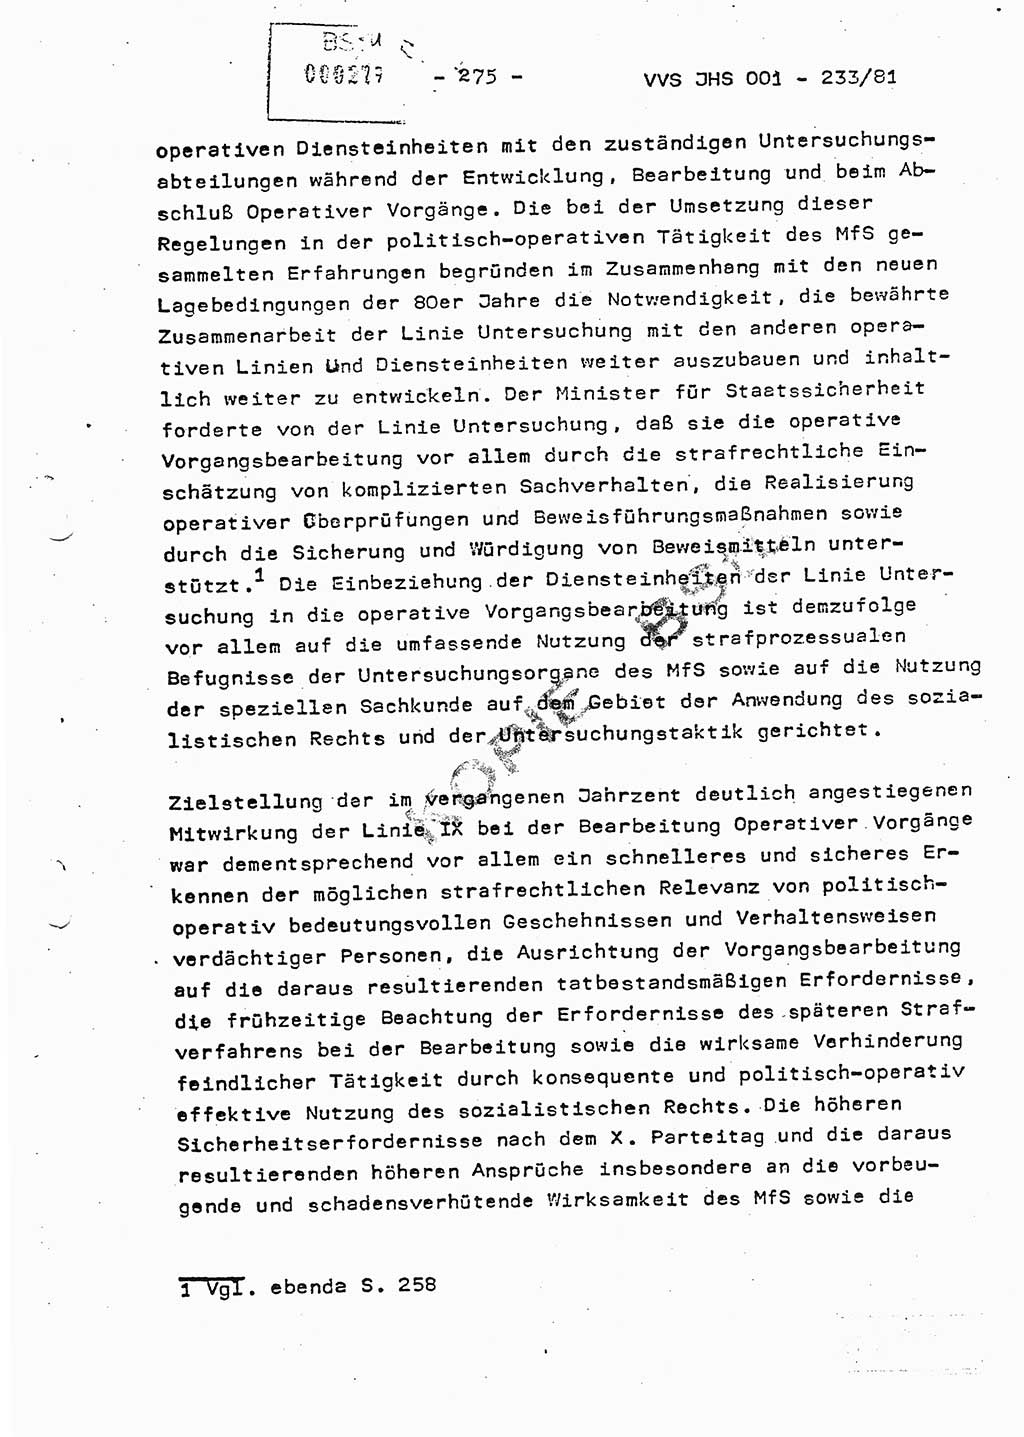 Dissertation Oberstleutnant Horst Zank (JHS), Oberstleutnant Dr. Karl-Heinz Knoblauch (JHS), Oberstleutnant Gustav-Adolf Kowalewski (HA Ⅸ), Oberstleutnant Wolfgang Plötner (HA Ⅸ), Ministerium für Staatssicherheit (MfS) [Deutsche Demokratische Republik (DDR)], Juristische Hochschule (JHS), Vertrauliche Verschlußsache (VVS) o001-233/81, Potsdam 1981, Blatt 275 (Diss. MfS DDR JHS VVS o001-233/81 1981, Bl. 275)